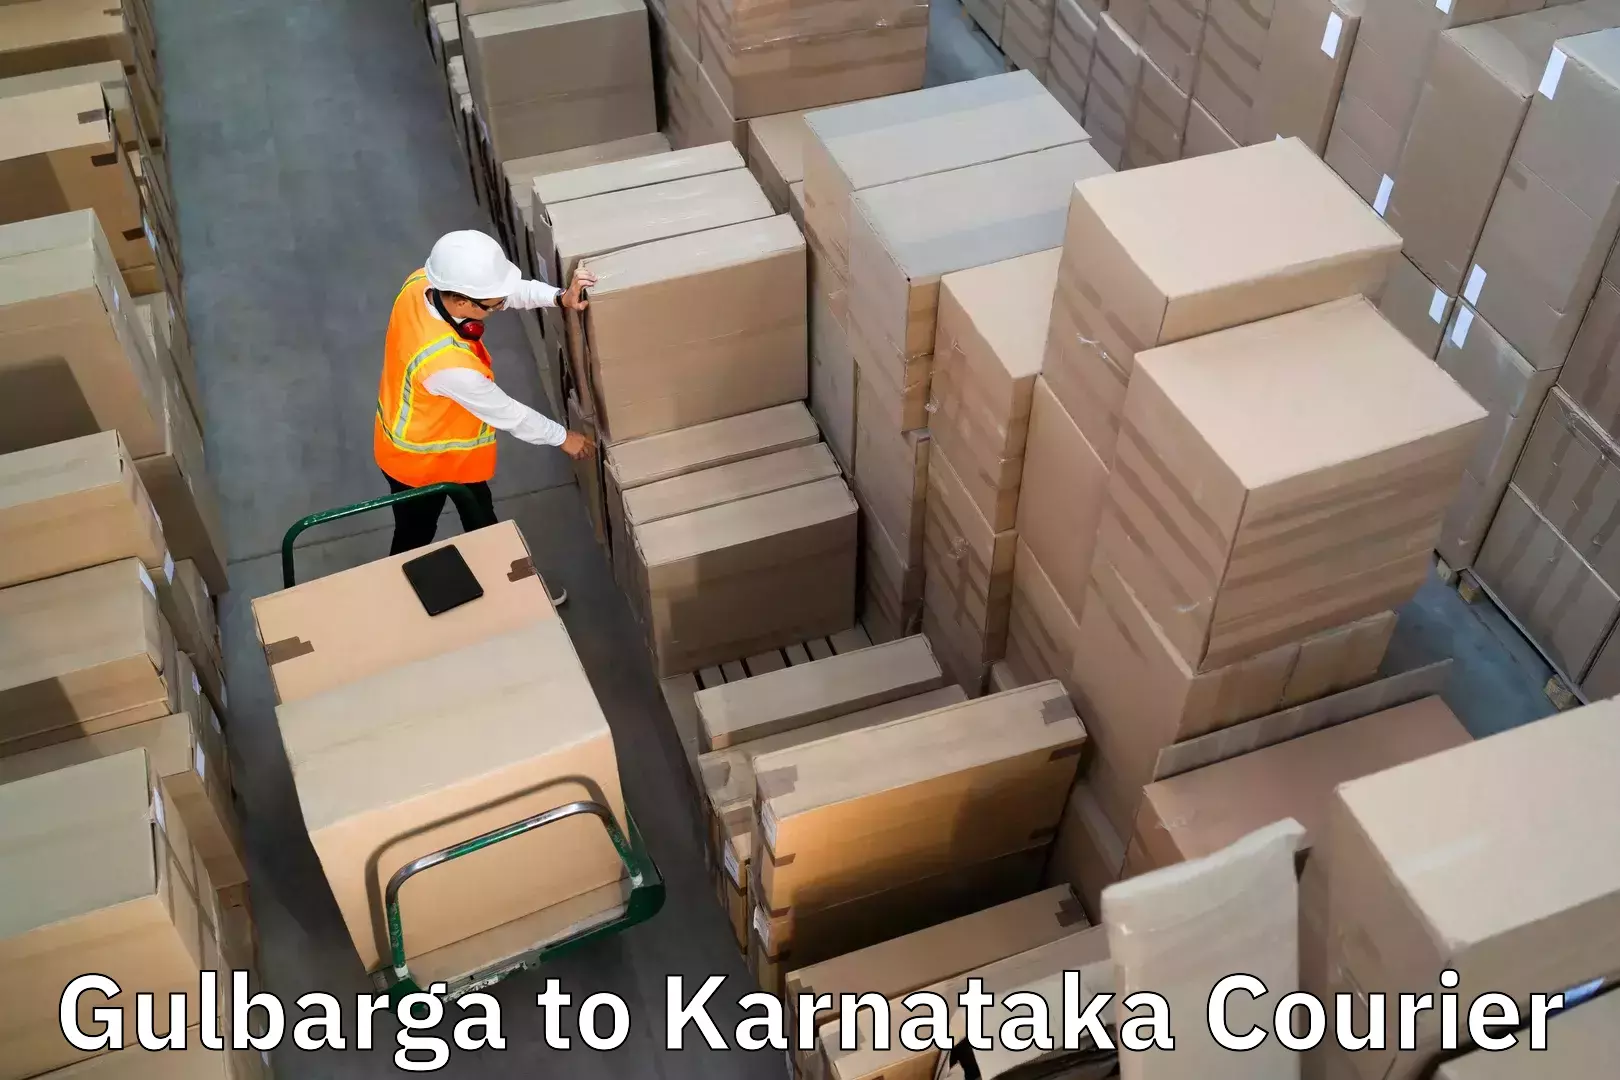 Baggage delivery technology Gulbarga to Ramanathapura